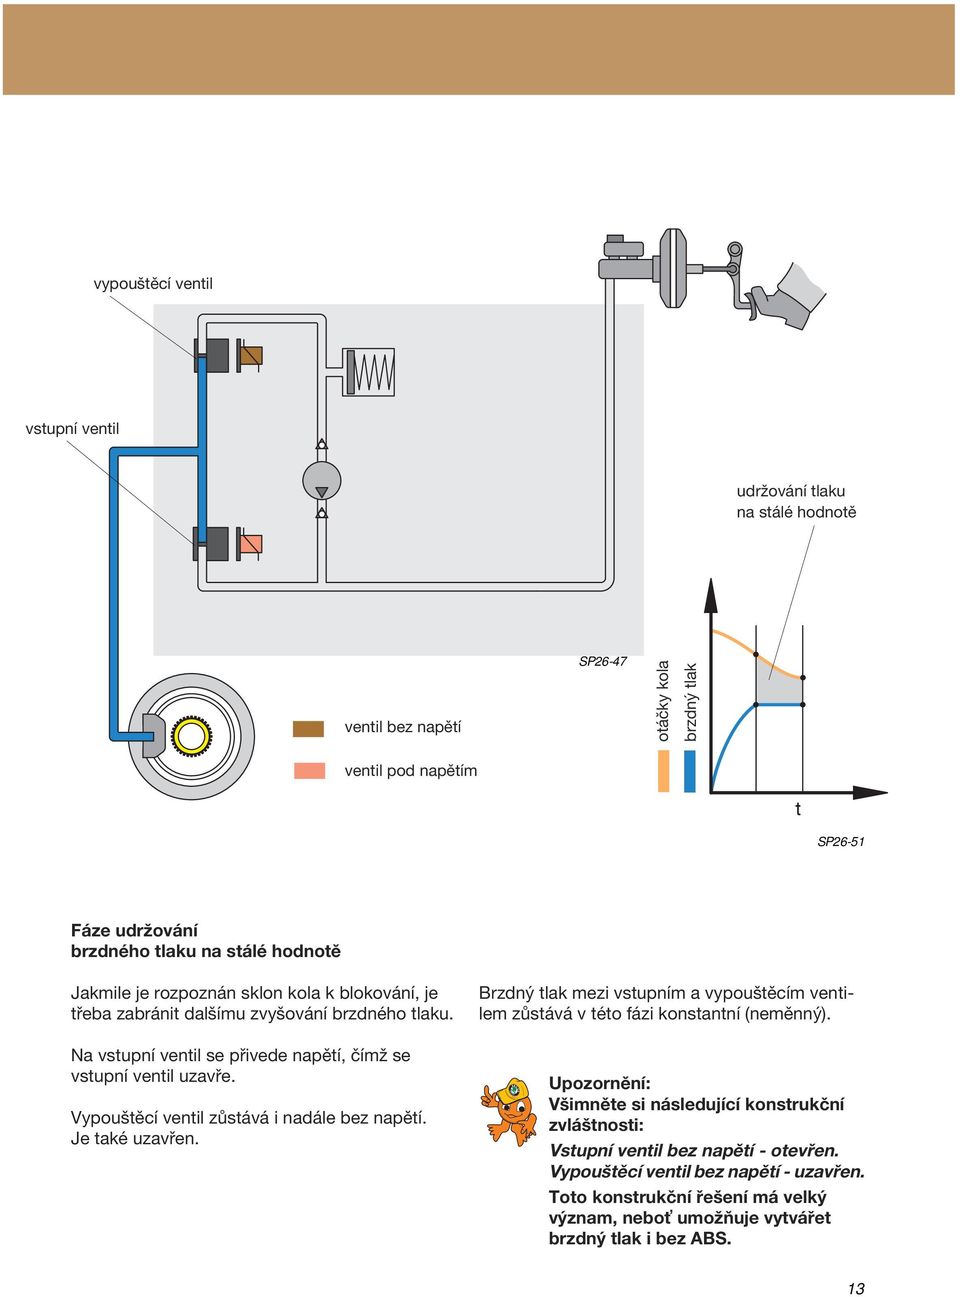 Vypouštěcí ventil zůstává i nadále bez napětí. Je také uzavřen. Brzdný tlak mezi vstupním a vypouštěcím ventilem zůstává v této fázi konstantní (neměnný).